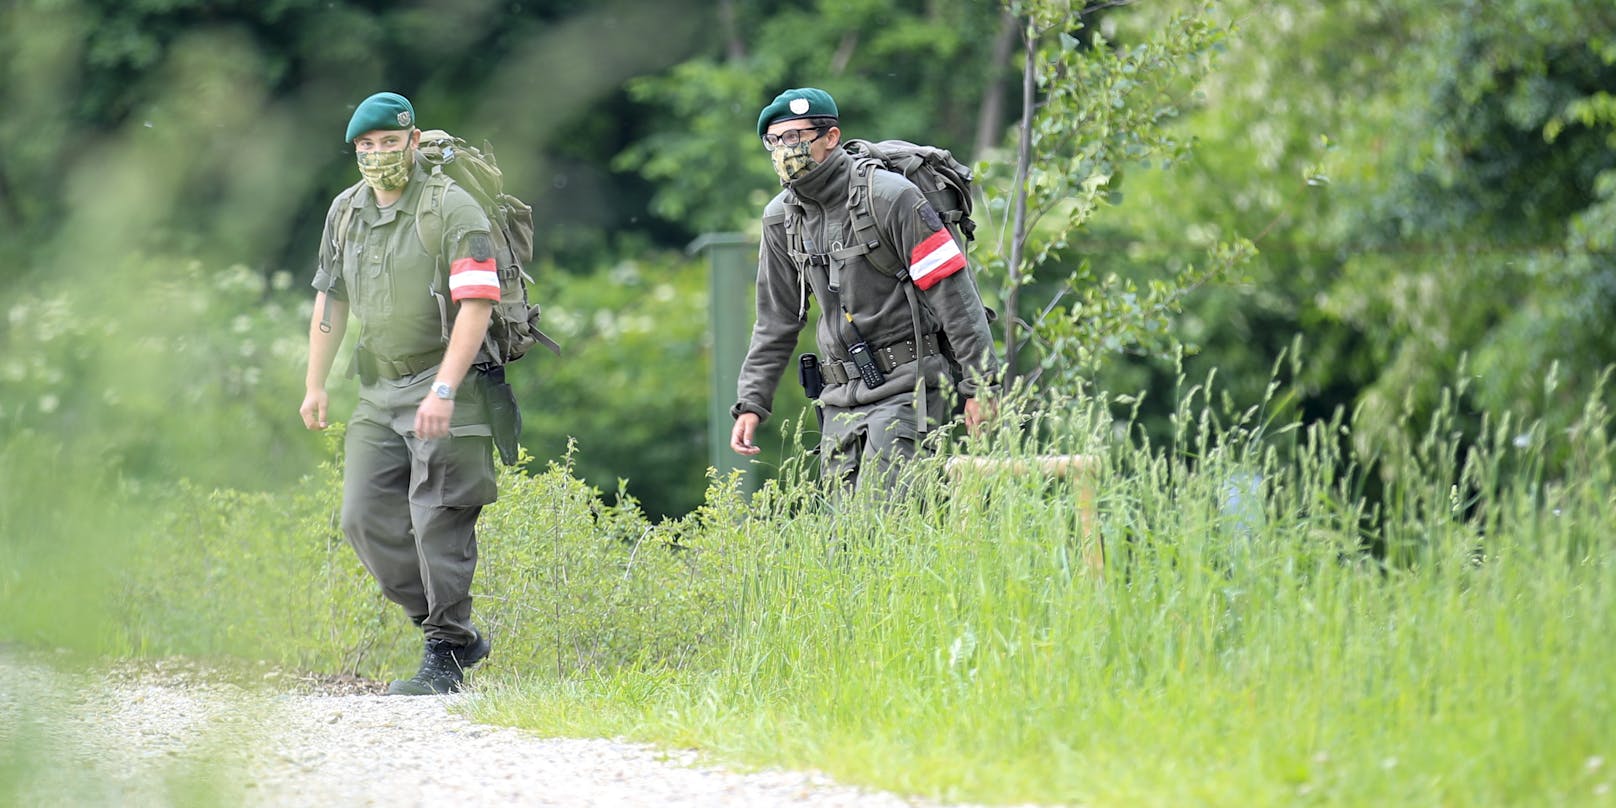 Milizsoldaten im Einsatz an der Grenze in Bad Radkersburg (Steiermark)